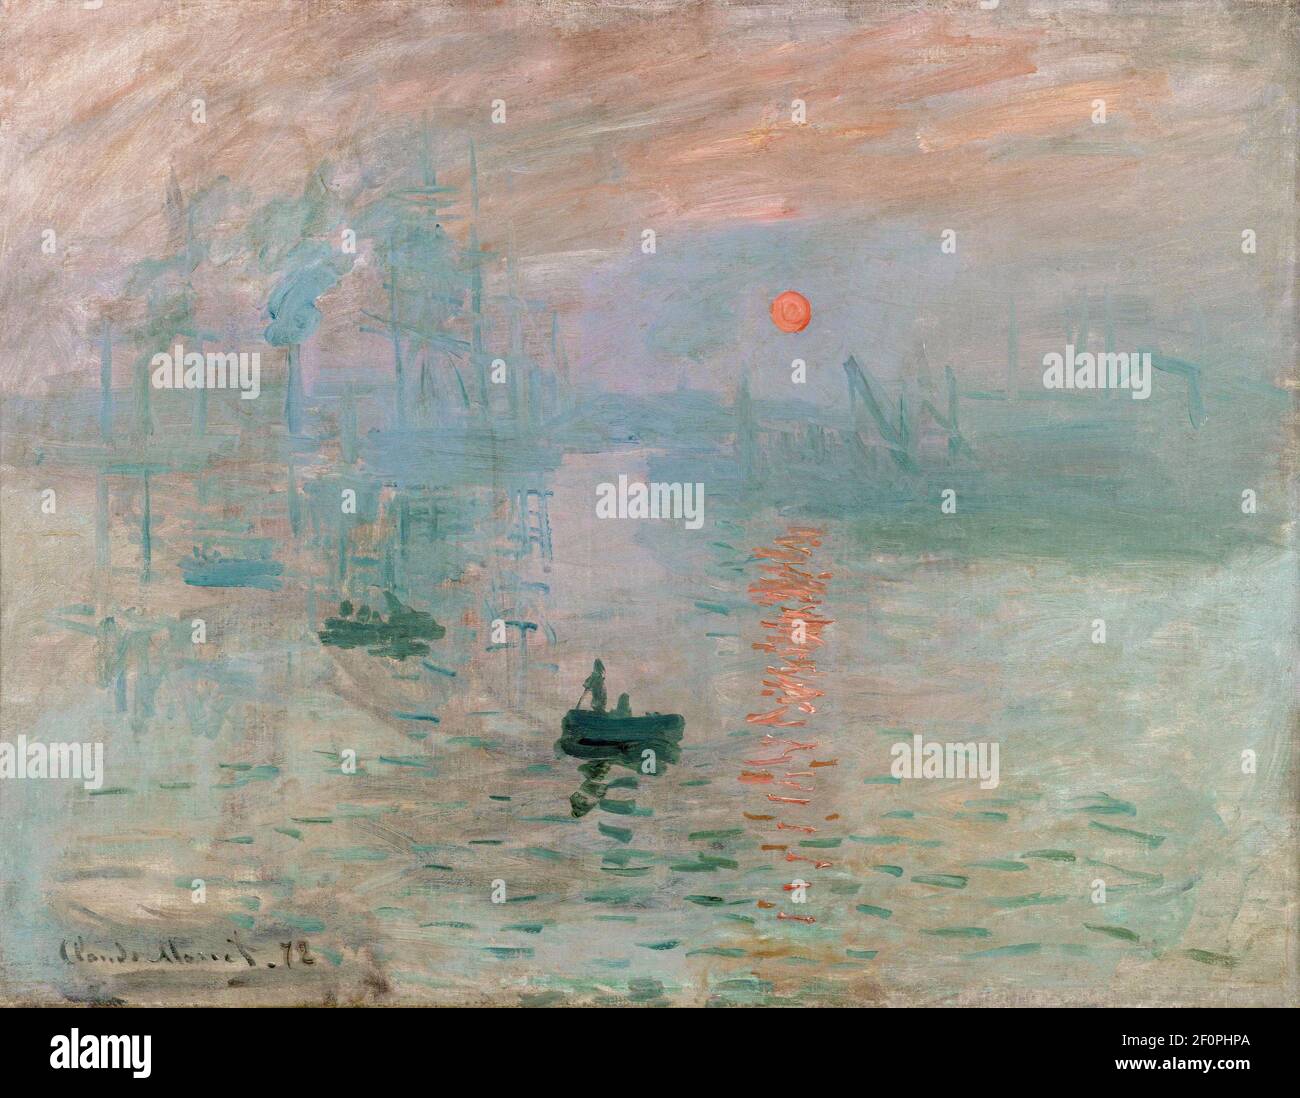 Claude Monet (1840-1296) Impression, Sunrise, 1872, oil on canvas. Marmottan Monet Museum, Paris. Stock Photo